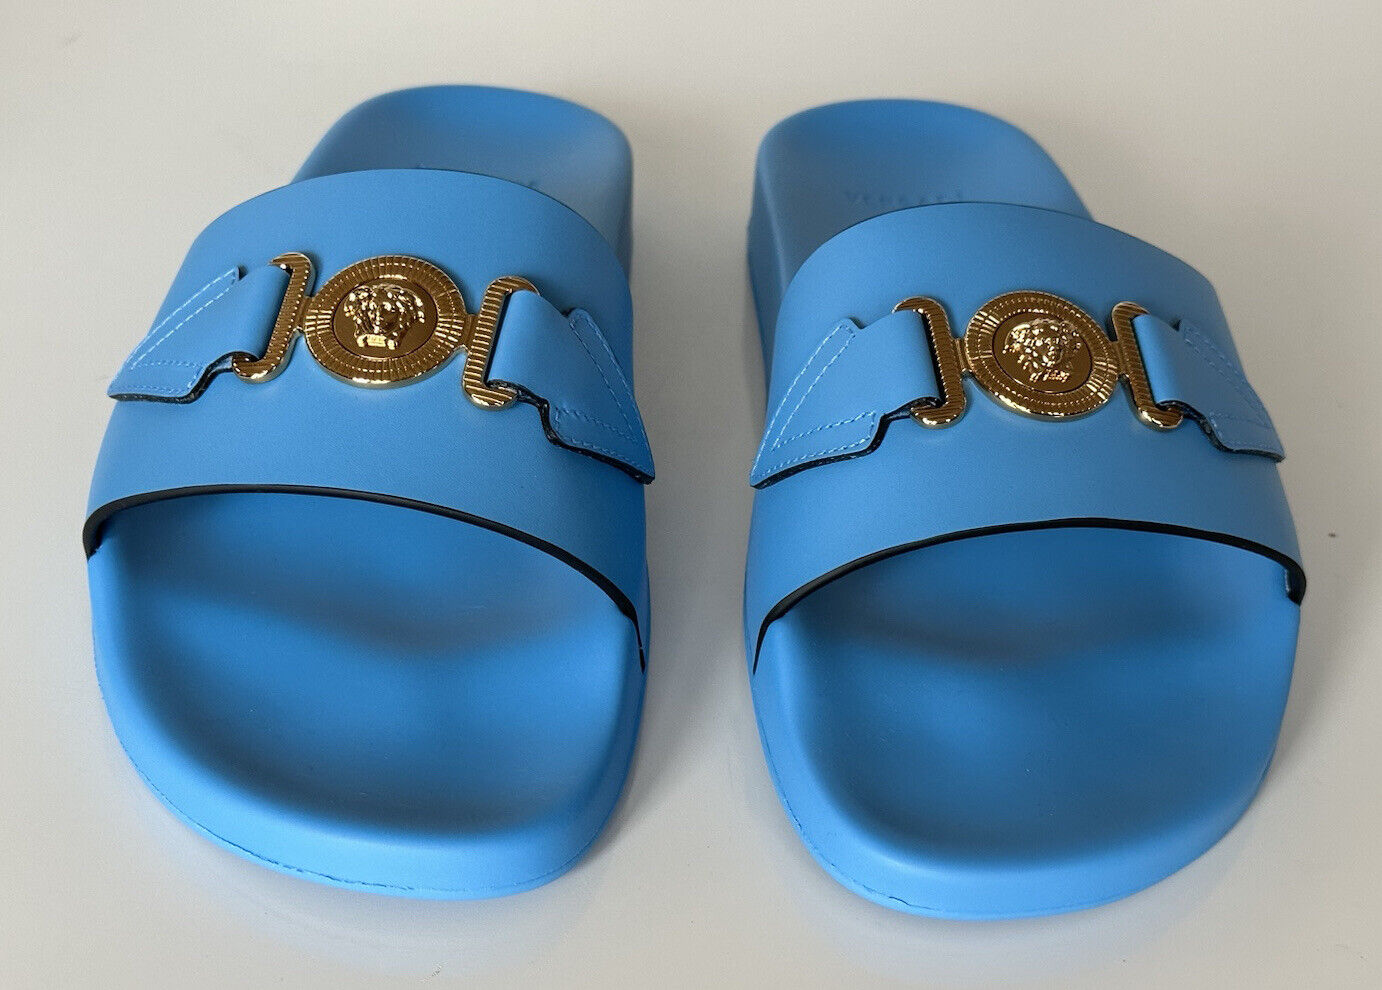 NIB 575 долл. Versace Gold Medusa Кожаные/резиновые сандалии Синие 11,5 (44,5) 1004983 IT